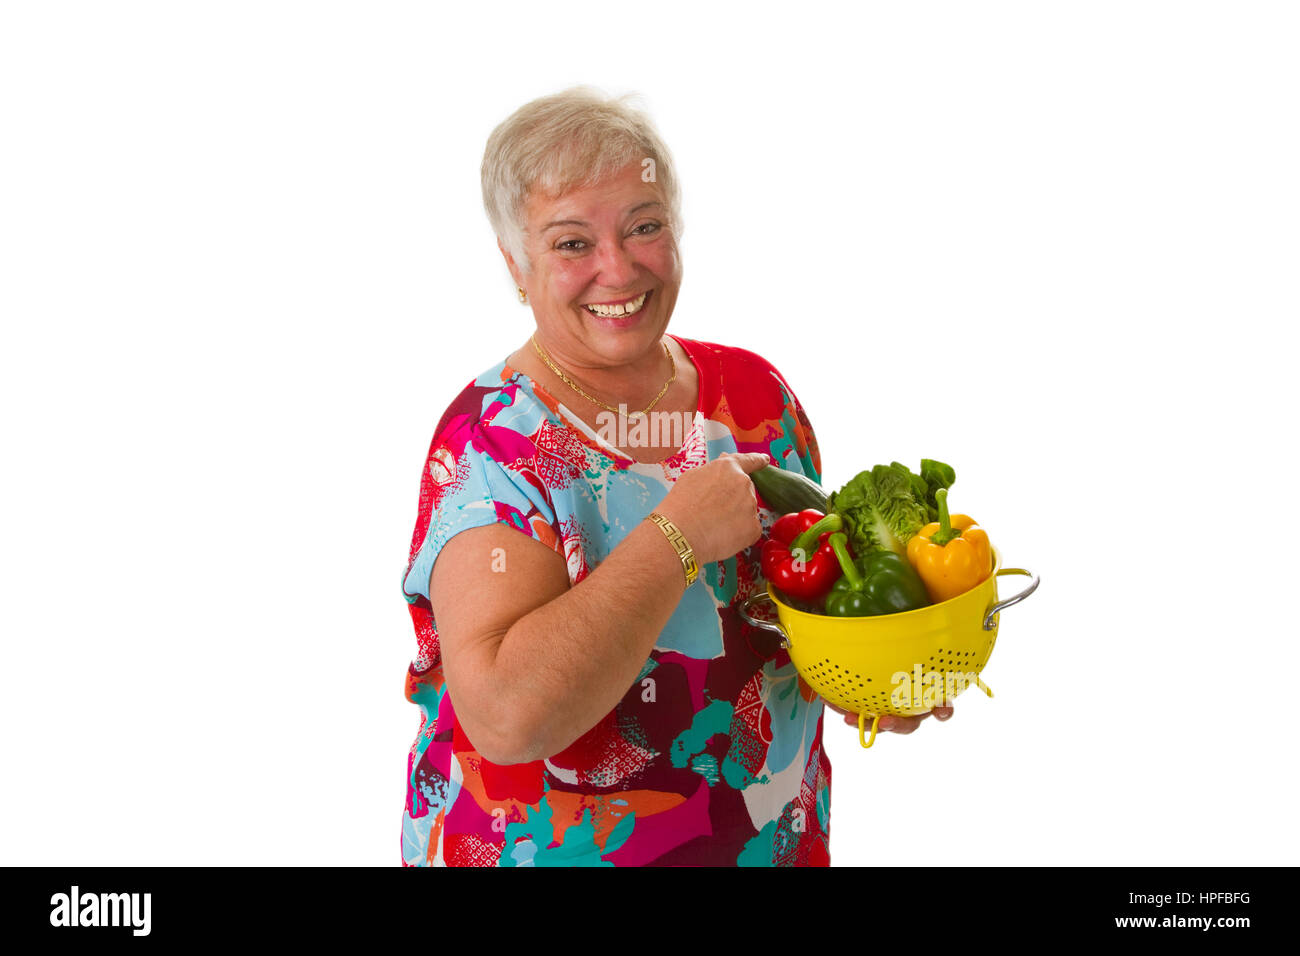 Femmina con verdure fresche - isolato su sfondo bianco Foto Stock